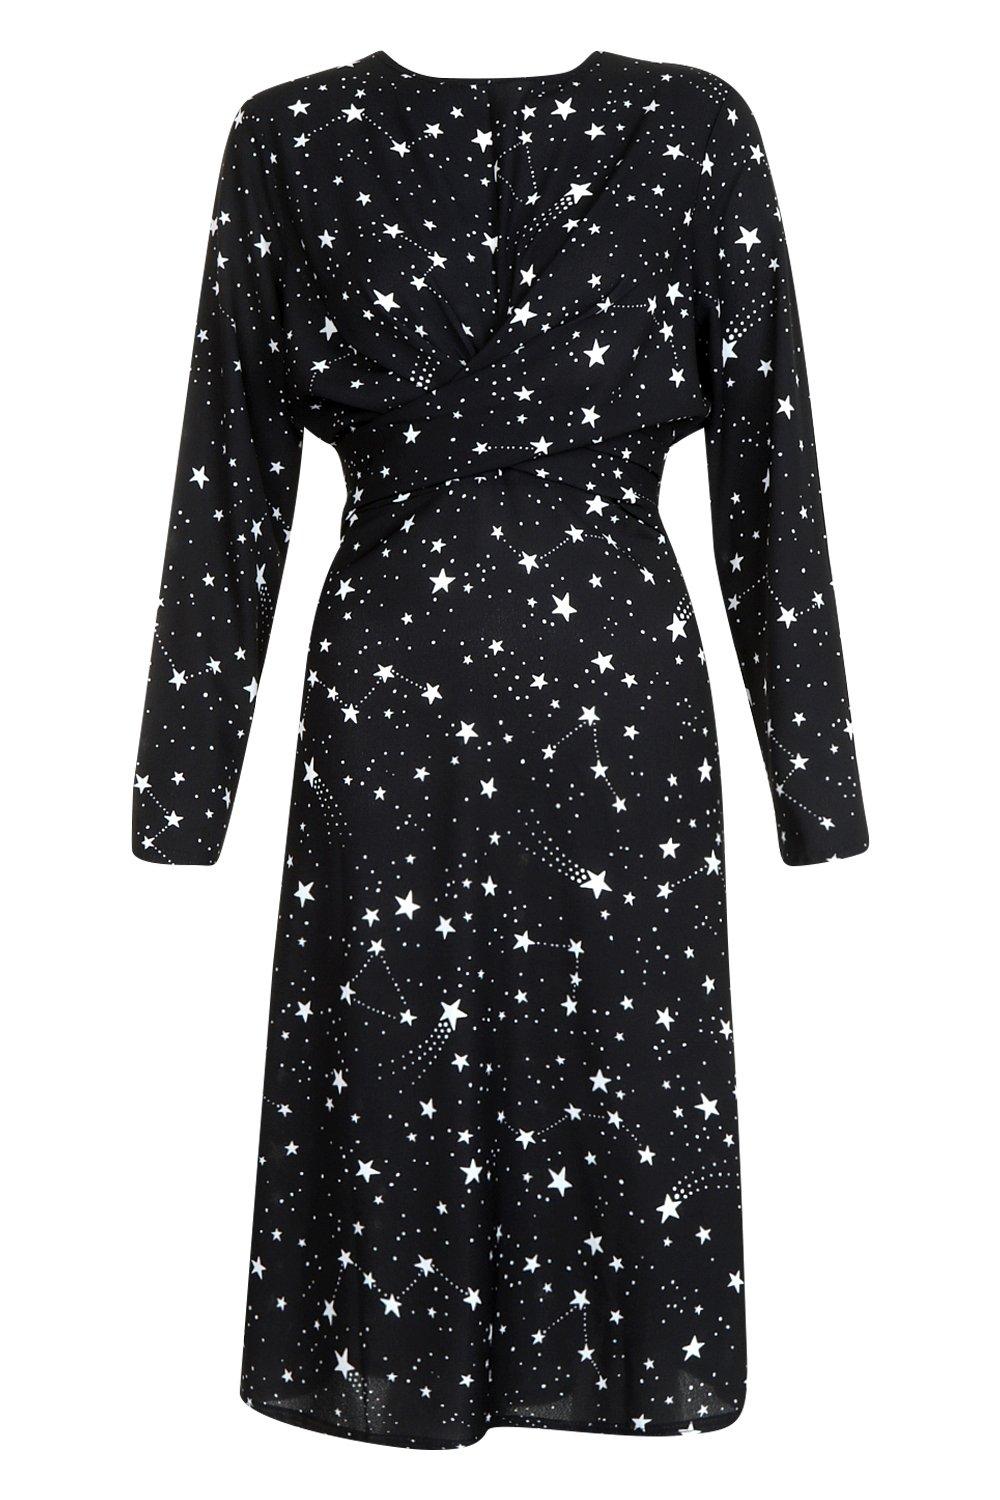 boohoo constellation dress